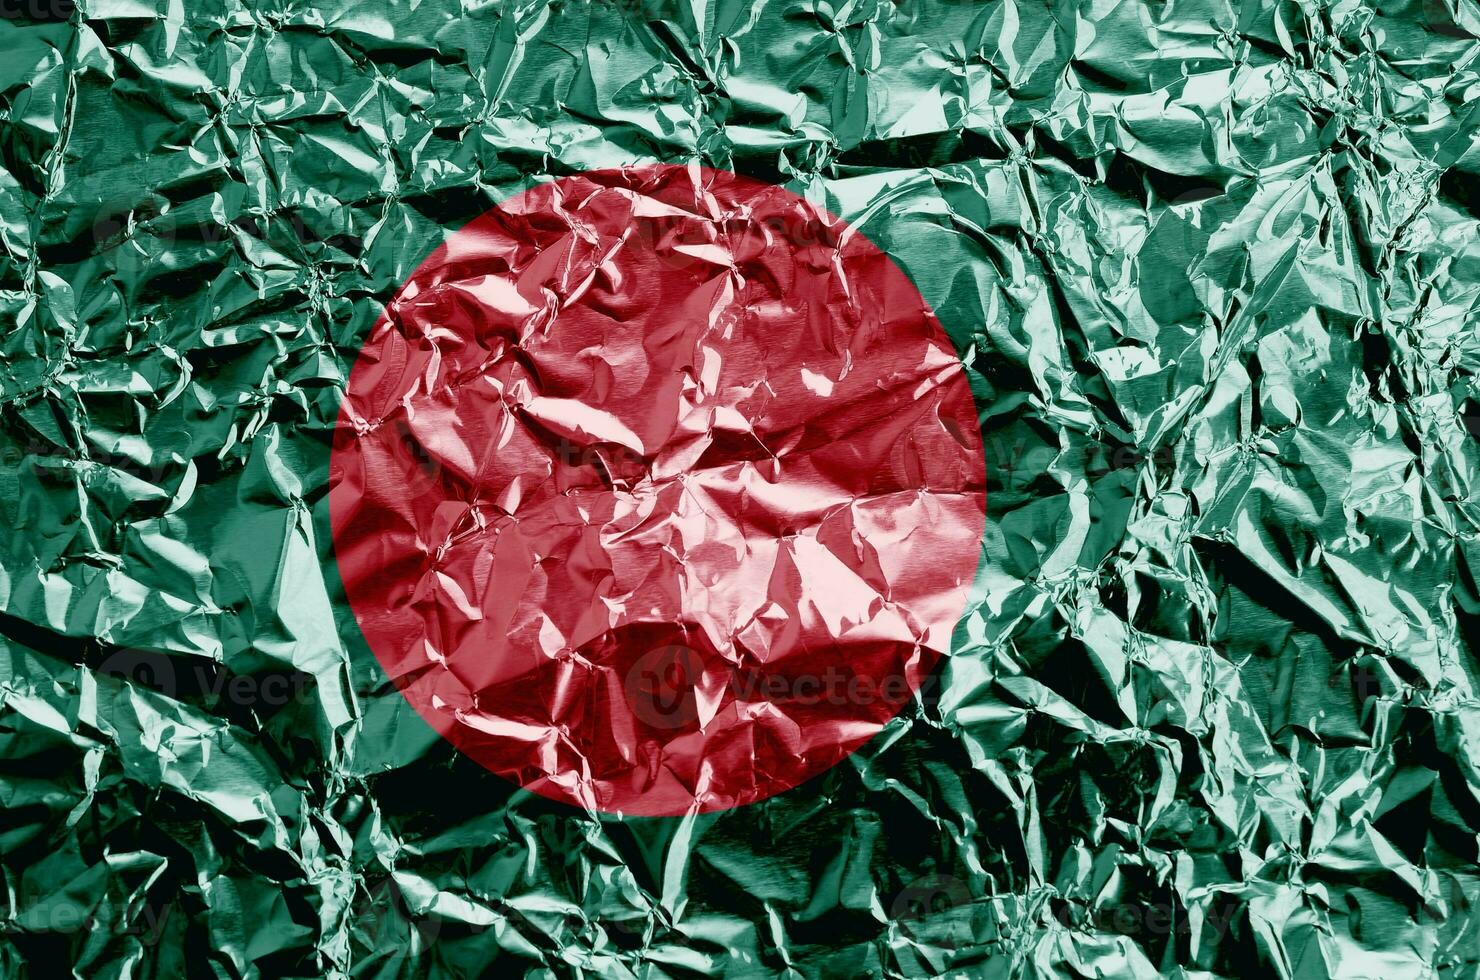 bangladesh flagga avbildad i måla färger på skinande skrynkliga aluminium folie närbild. texturerad baner på grov bakgrund foto